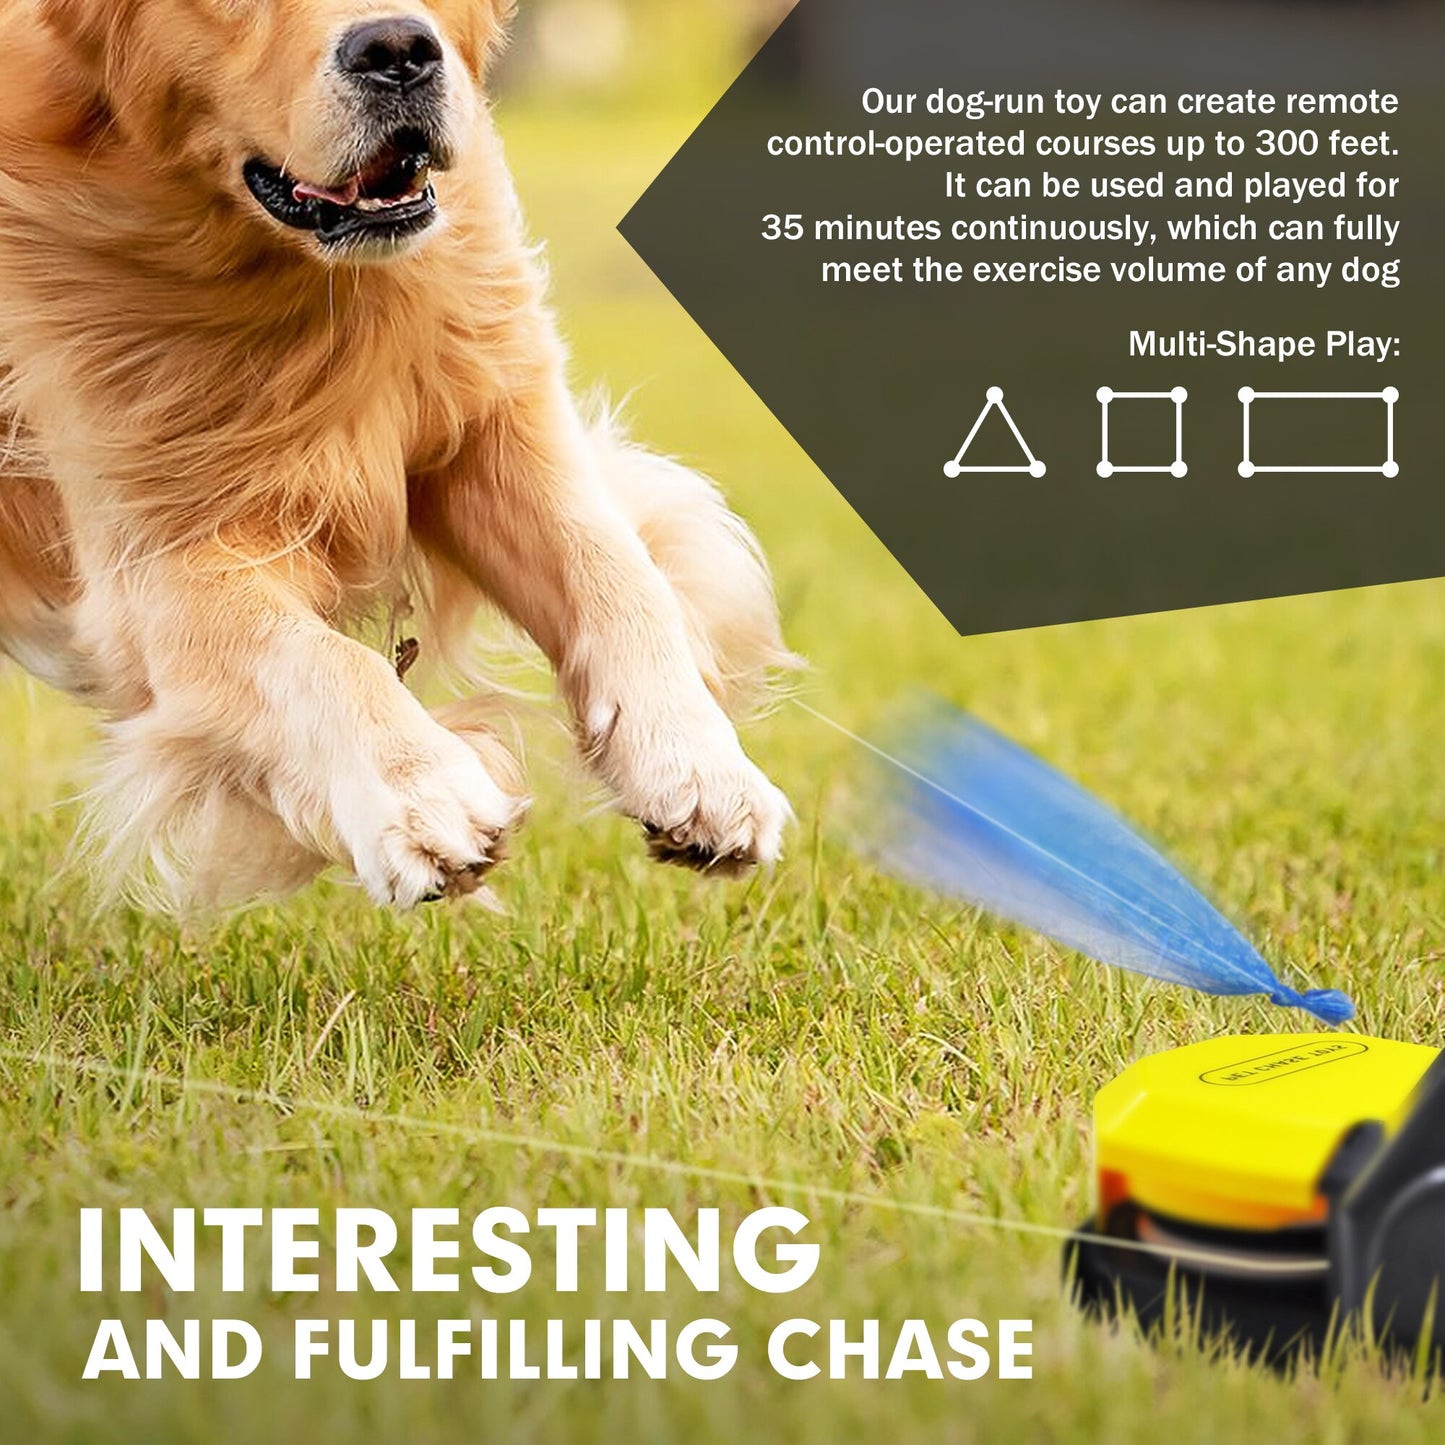 Swiftstrike Capture-The-Flag Dog Training Toy